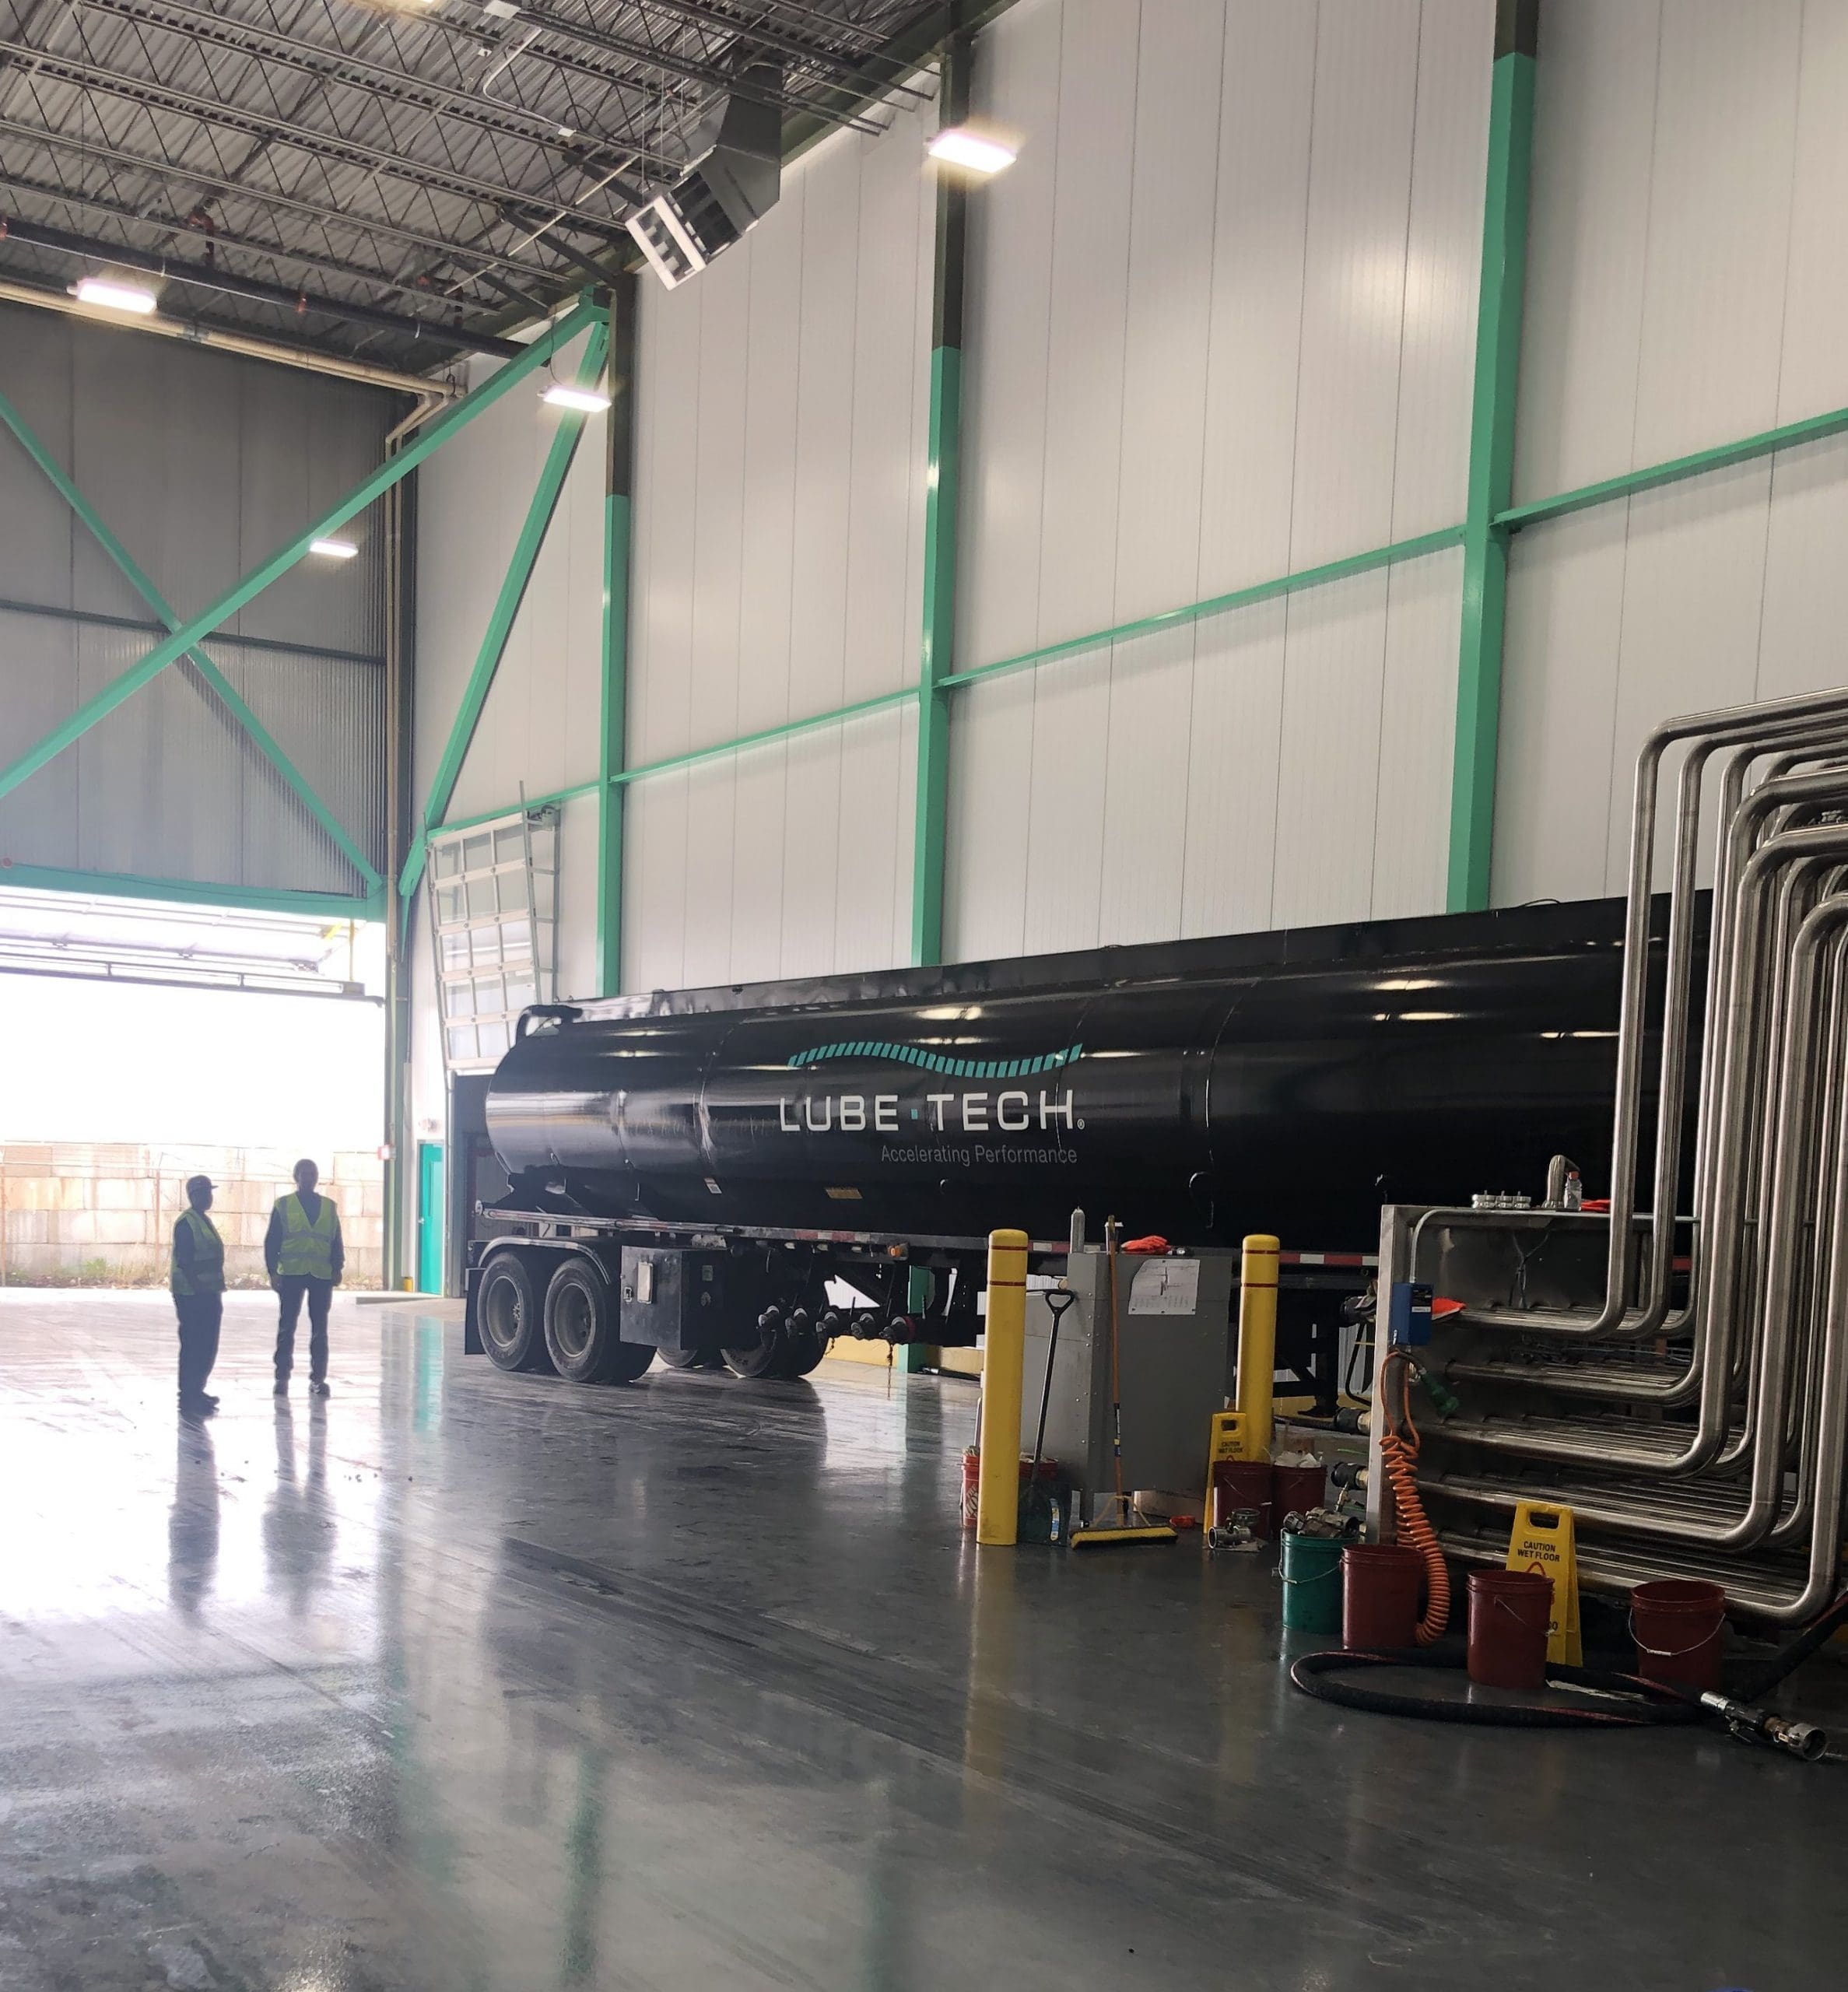 Lube-tech truck in indoor transport bay